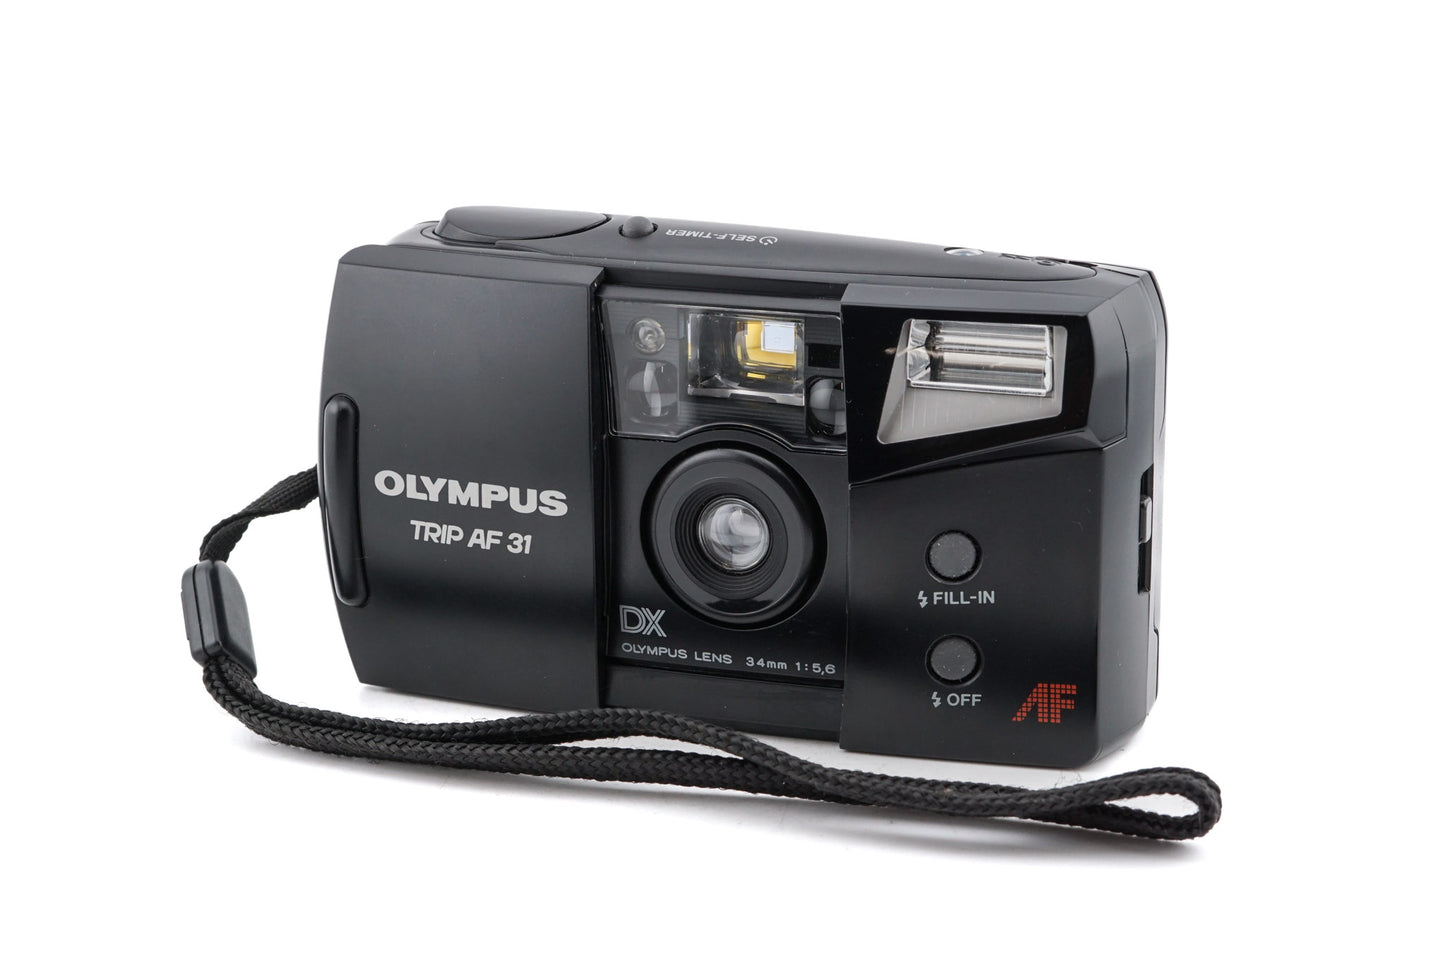 Olympus Trip AF 31 - Camera